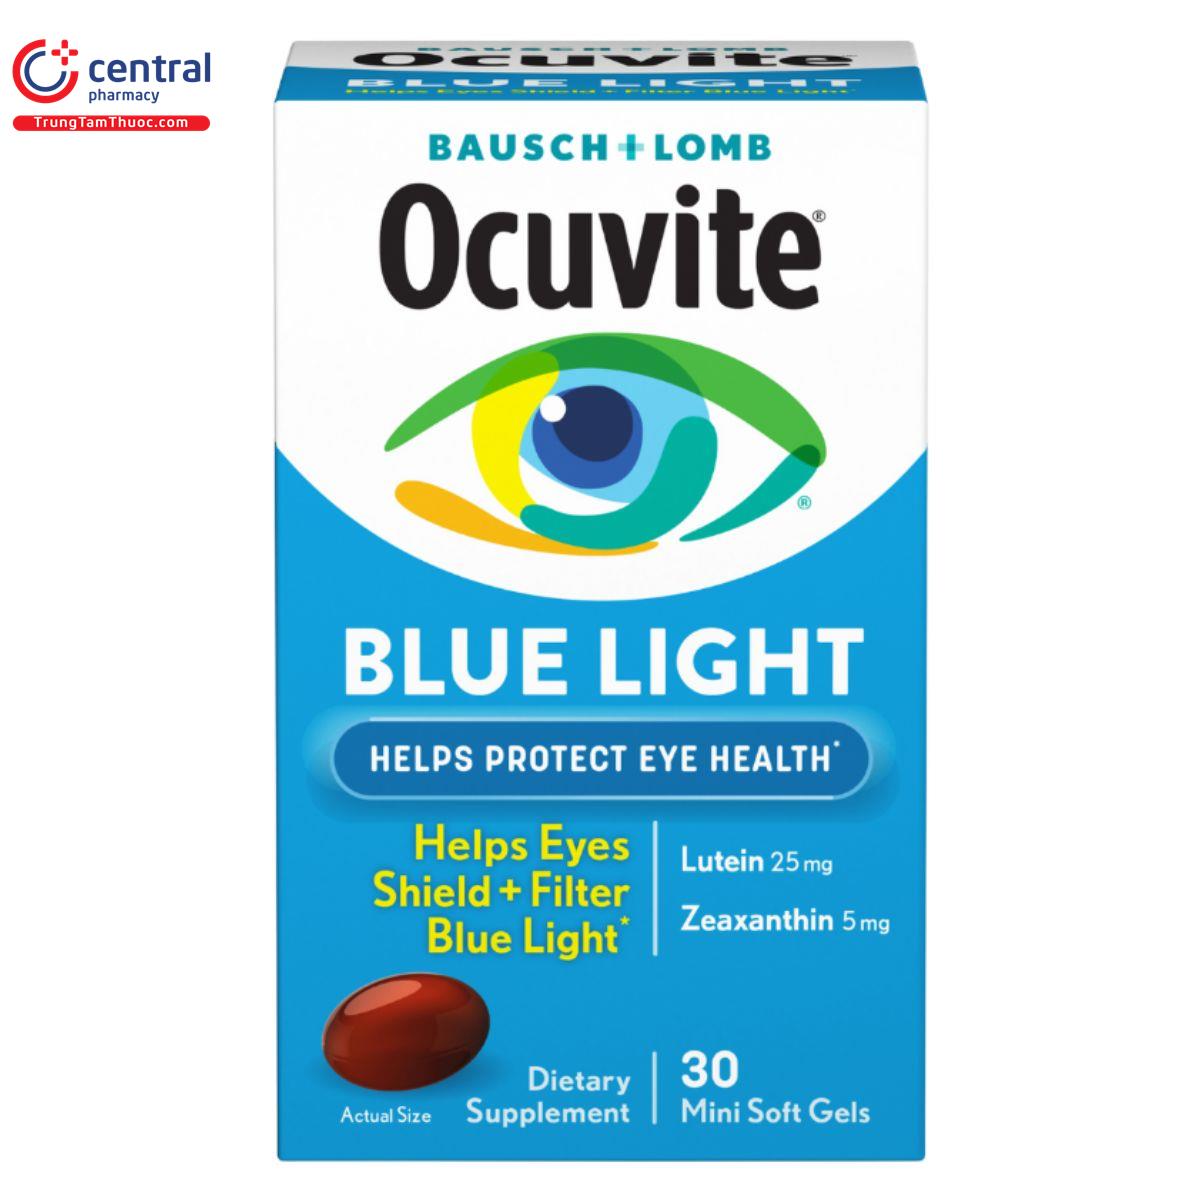 Thuốc Ocuvite Blue Light bảo vệ mắt khỏi tác hại của ánh sáng xanh